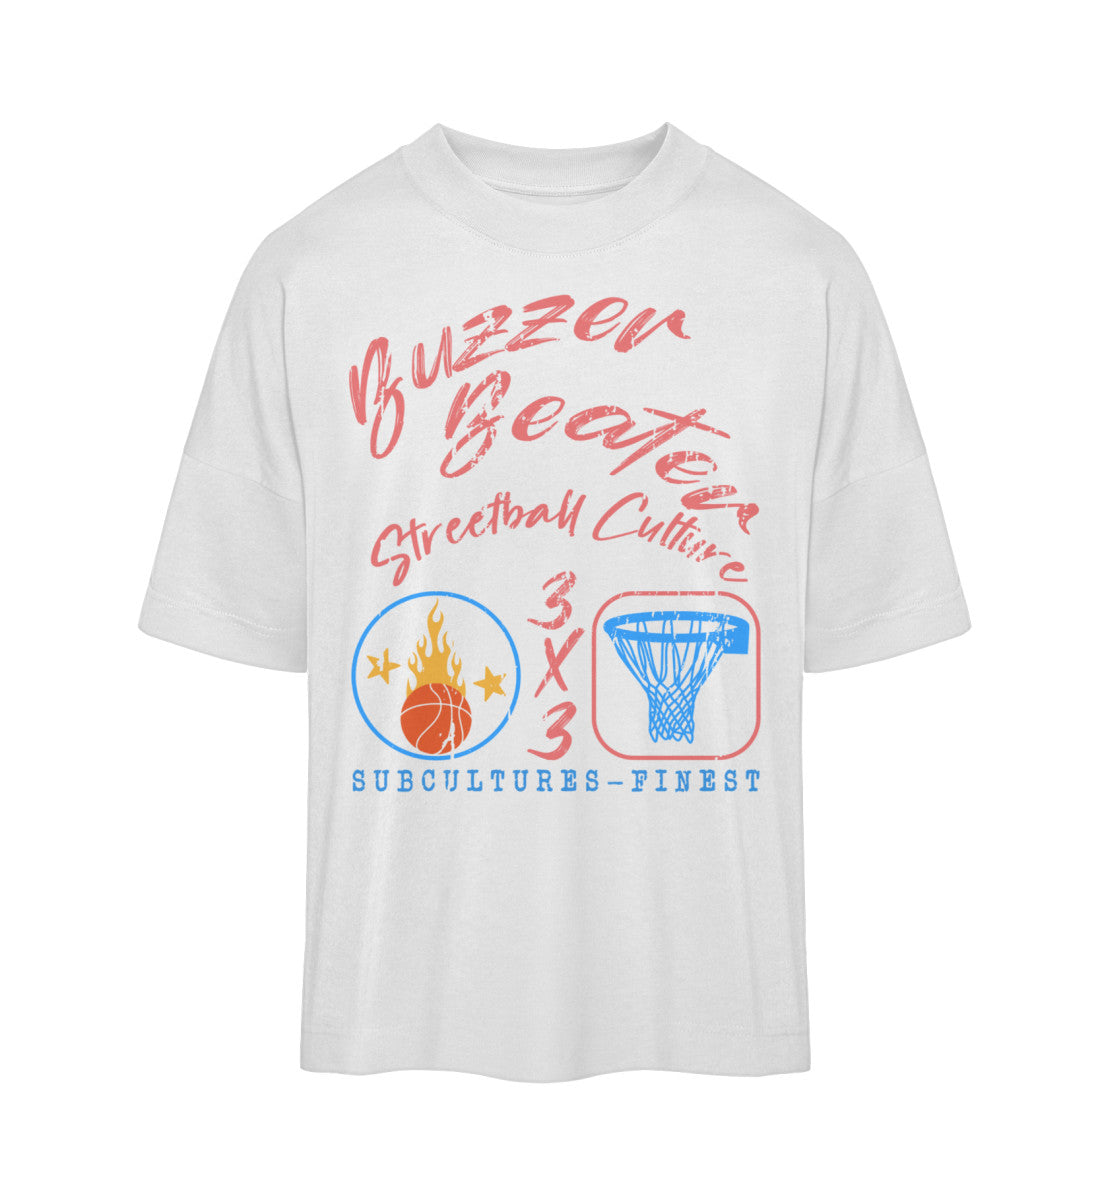 Weißes T-Shirt Unisex Oversize Fit für Frauen und Männer bedruckt mit dem Design der Roger Rockawoo Kollektion Basketball 3x3 Streetball